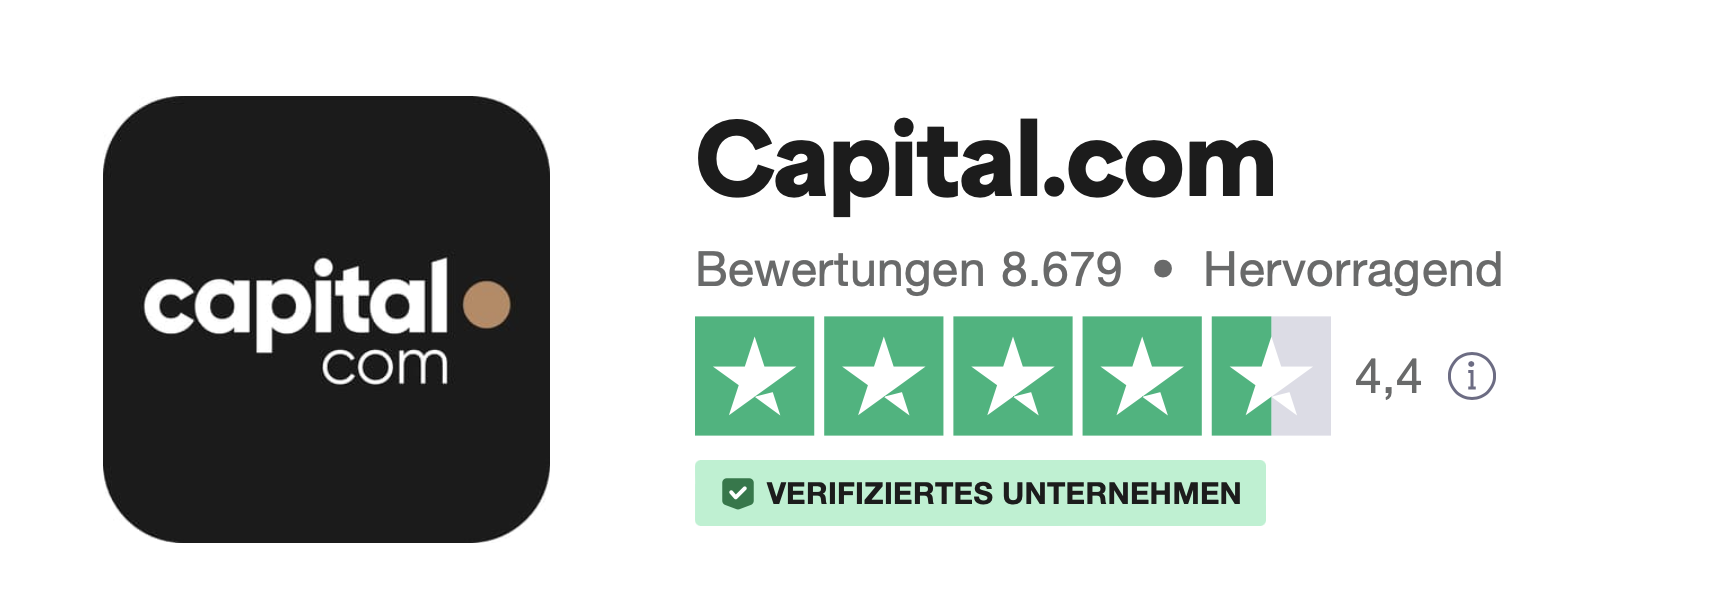 Capital.com Bewertungen bei Trustpilot